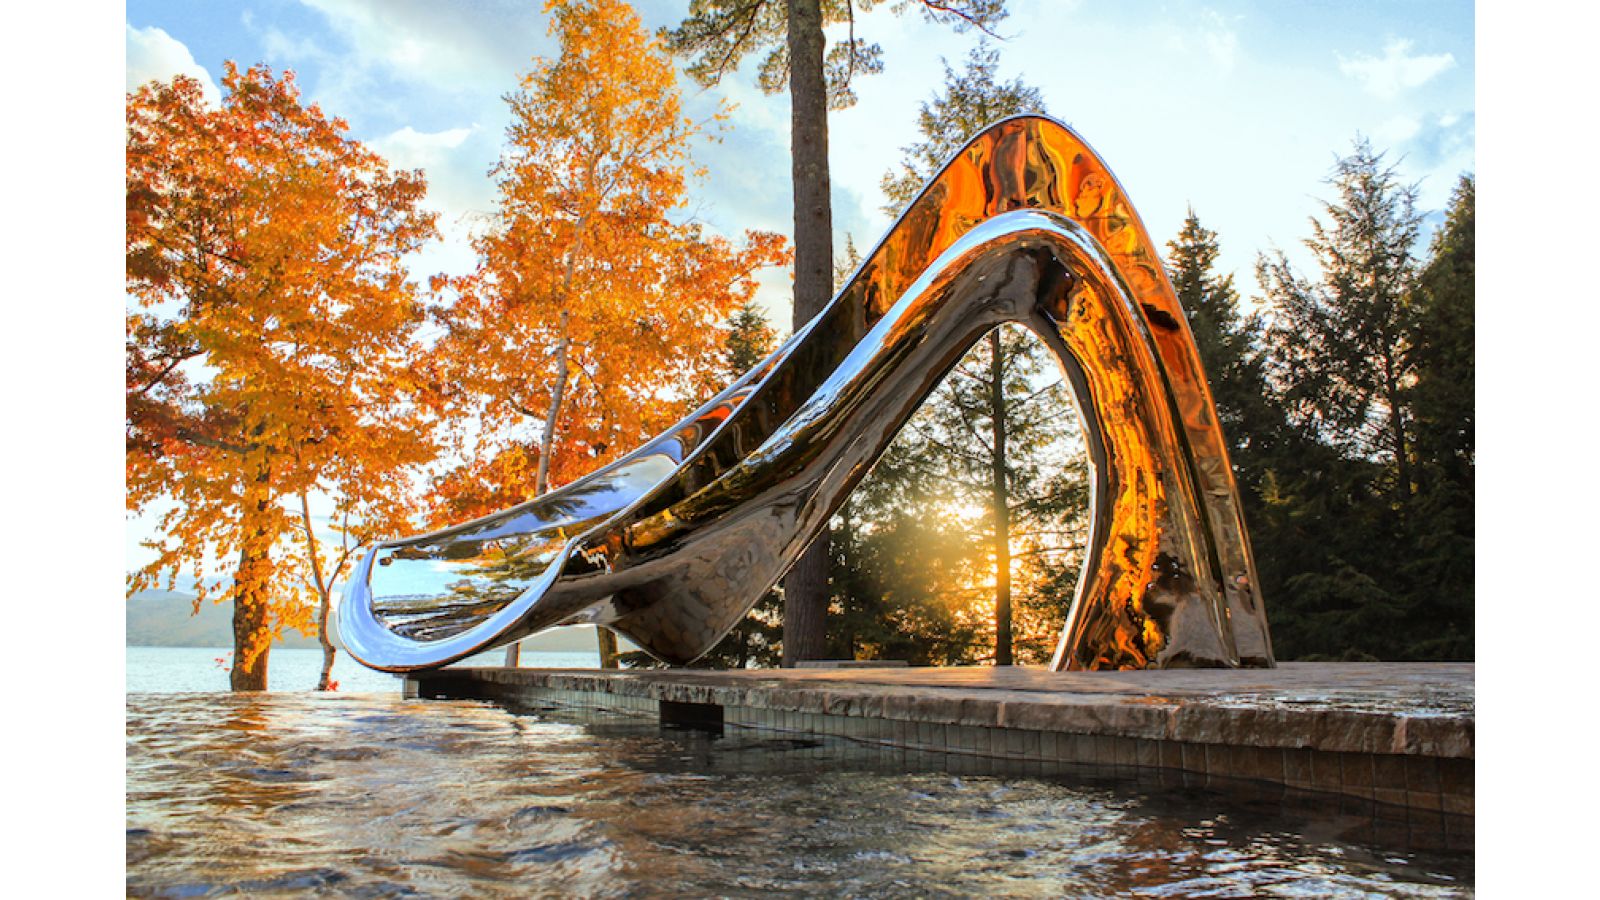 Water Slide - Luxury Sculptural Slide